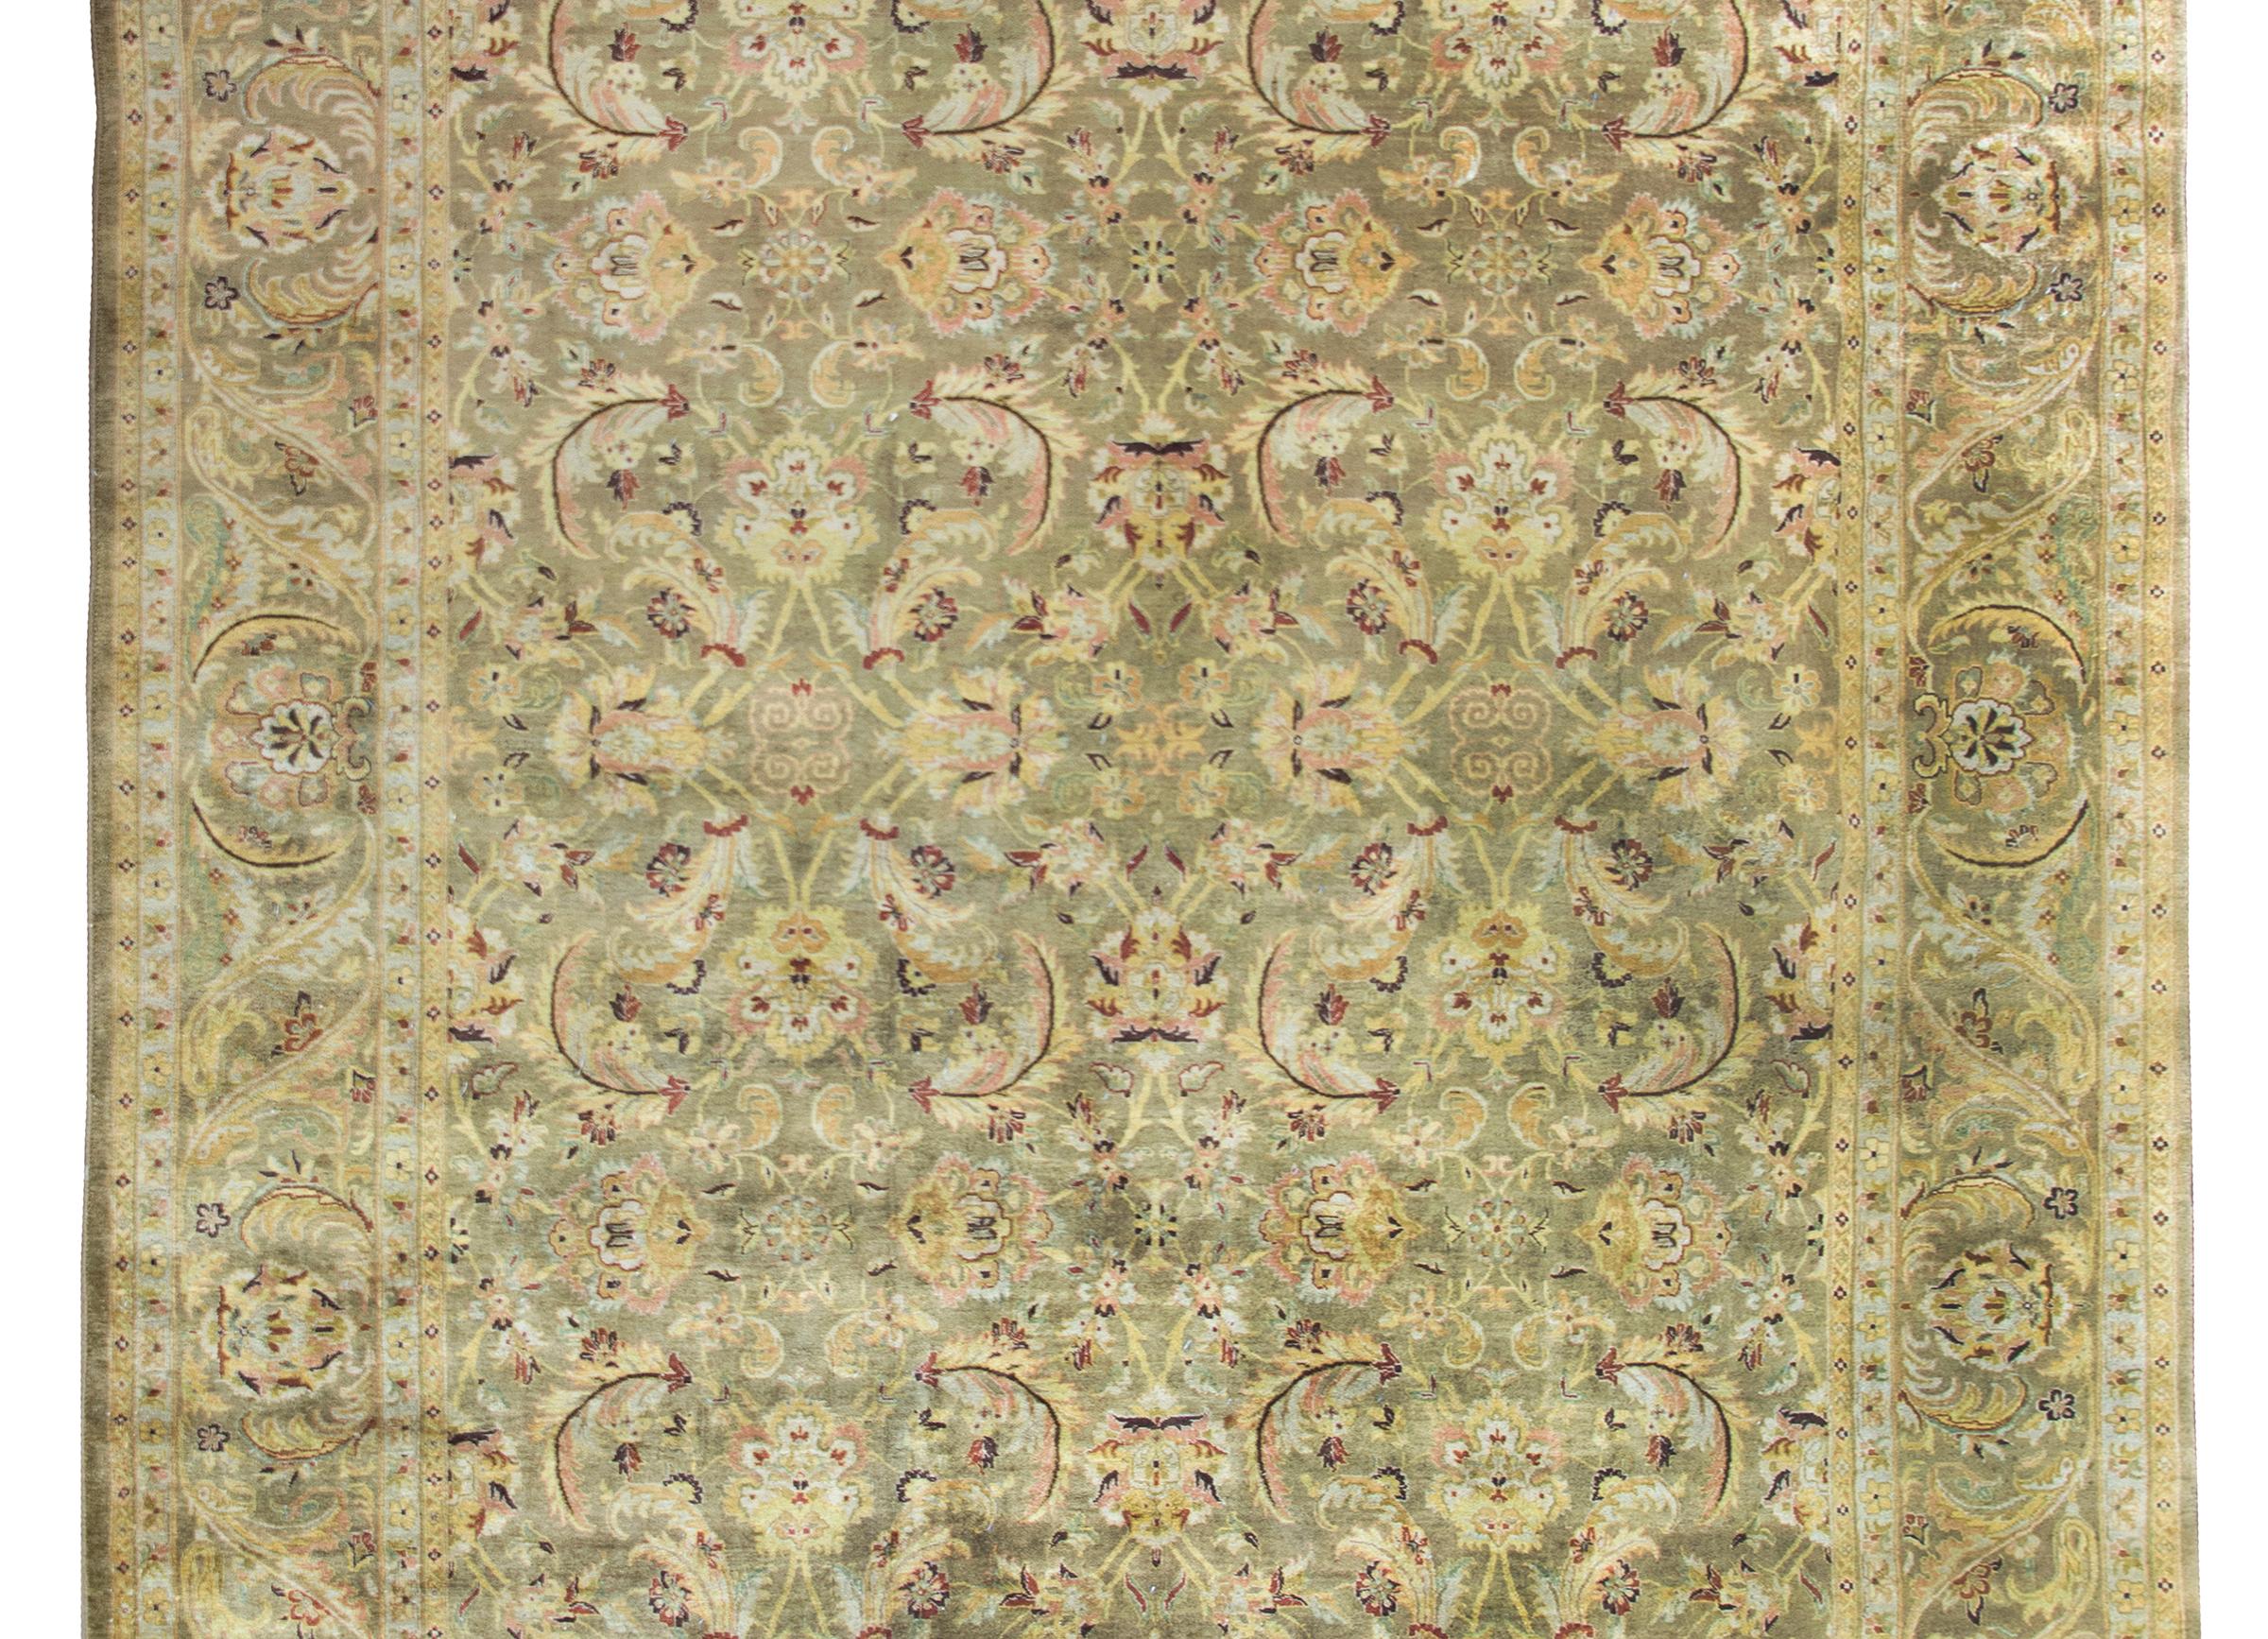 Magnifique tapis indien Oushak de la fin du XXe siècle, avec un motif floral, de feuilles et de vignes de grande taille, entouré d'une bordure complémentaire avec d'autres fleurs de grande taille, le tout tissé en jaune pâle, canneberge, rose et